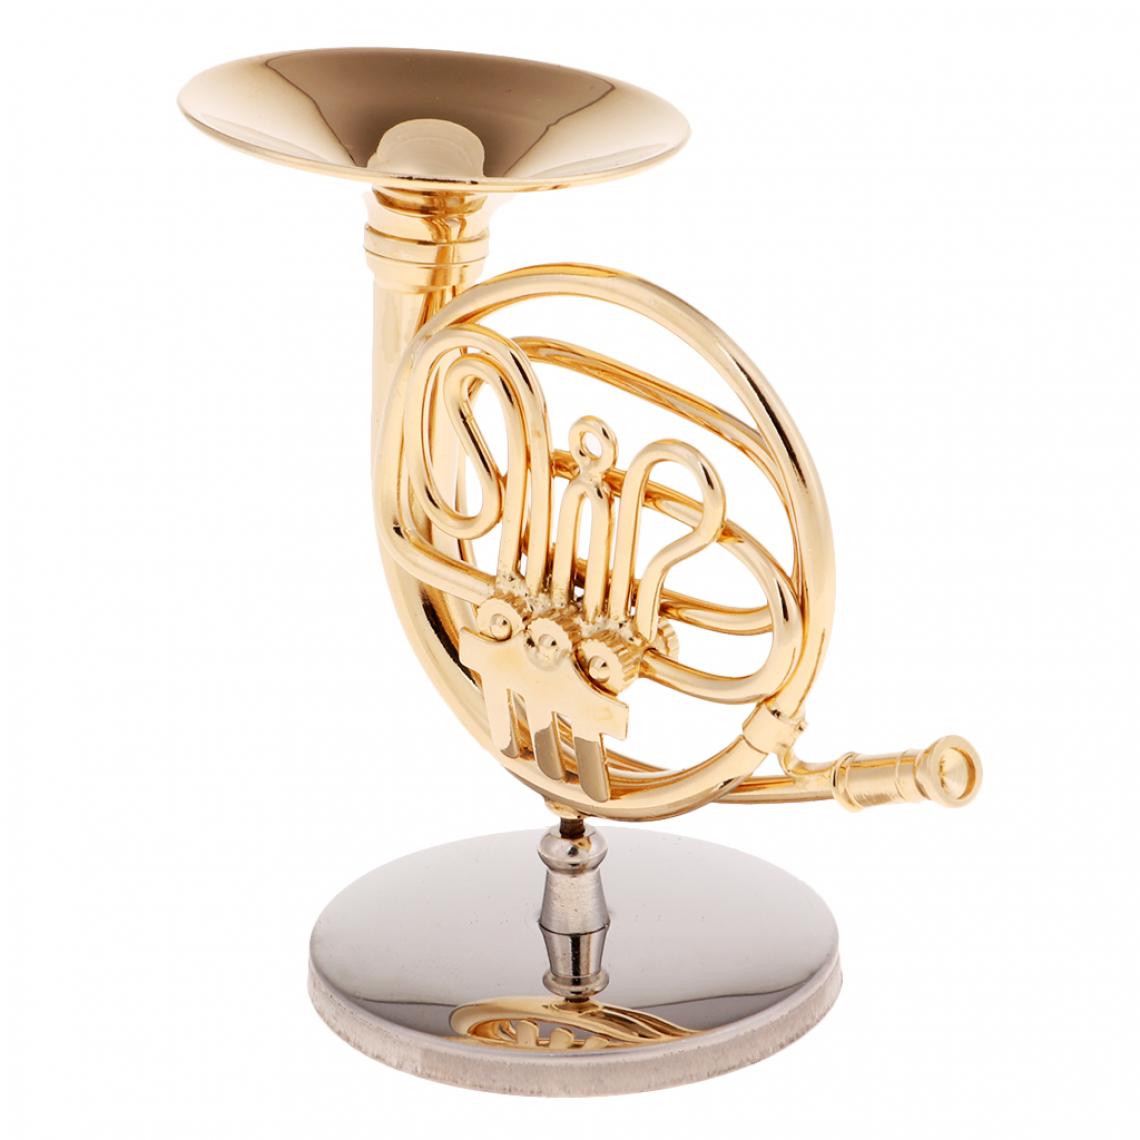 marque generique - Modèle Réaliste French Horn Brass Modèle En Métal à L’échelle 1/6 Figurine Action Jouets Musical - Films et séries